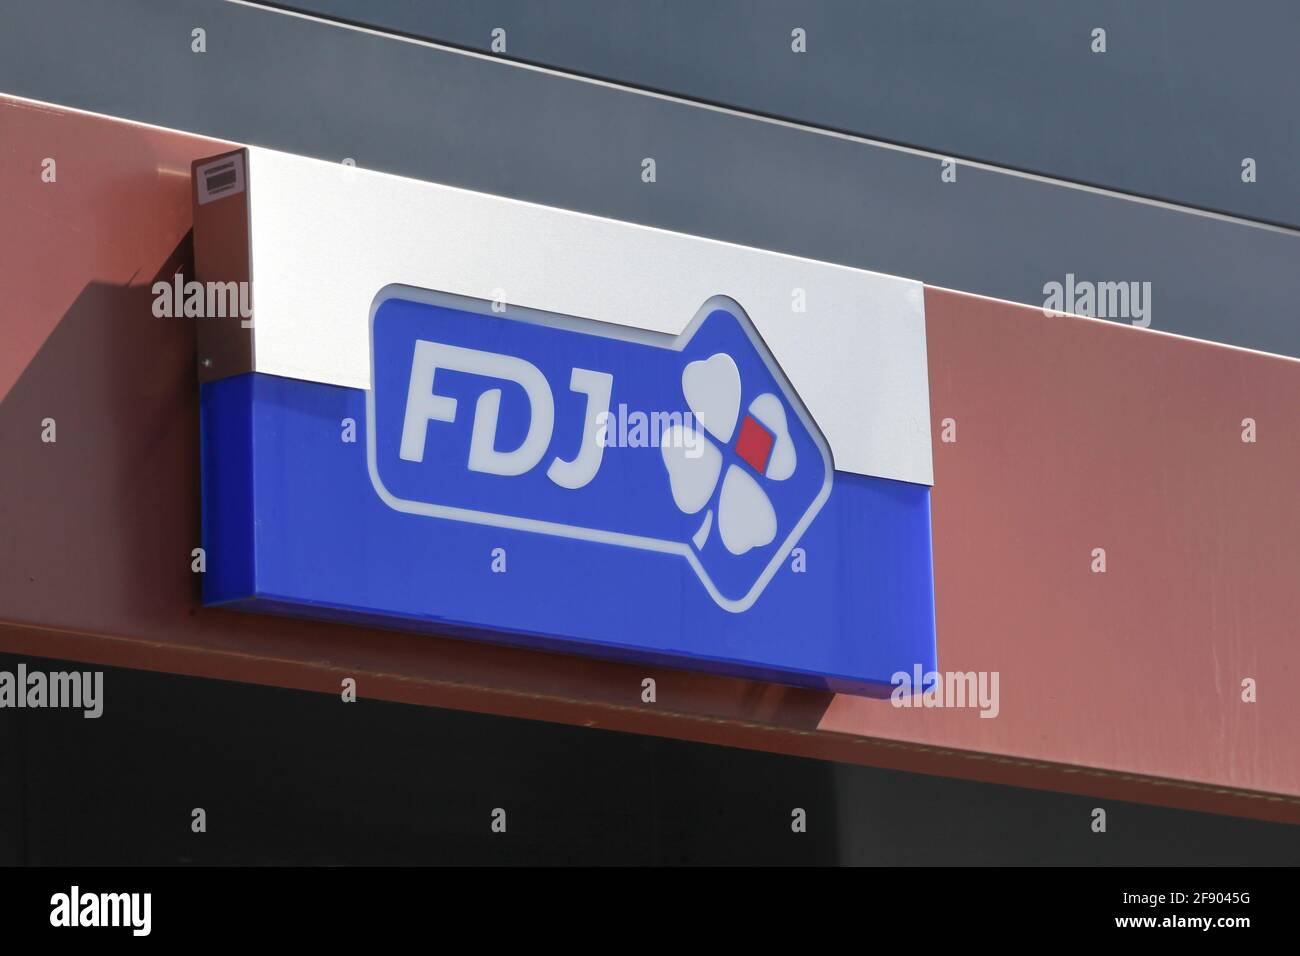 Saint-Priest, France - 8 septembre 2018 : logo FDJ sur un mur. Française des Jeux, également appelée FDJ, est l'opérateur des jeux de loterie nationaux en France Banque D'Images